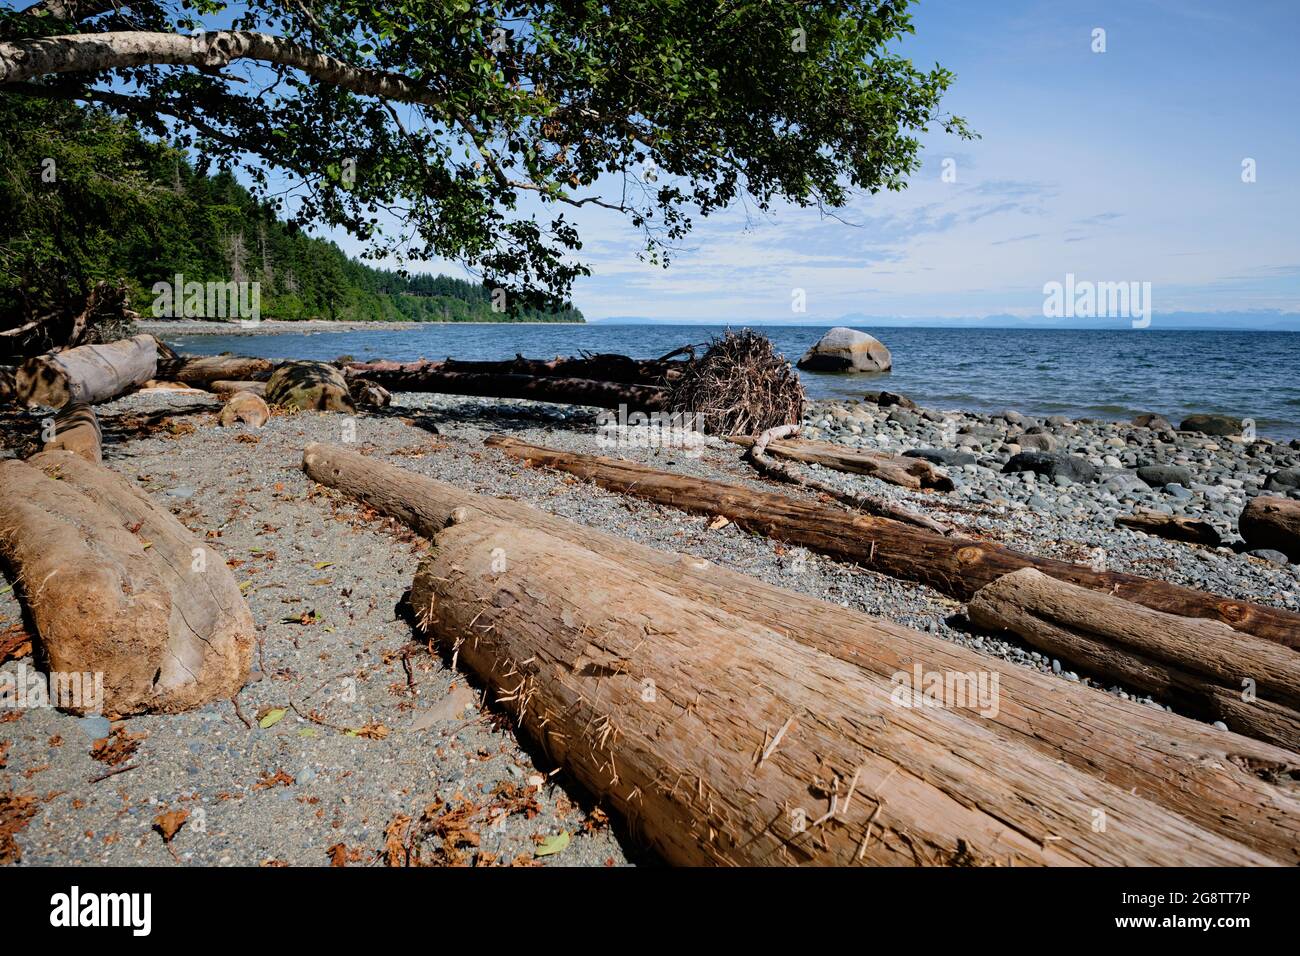 Colección de troncos erosionados que se encuentran paralelos entre sí, árboles en desuso, guijarros y arena en la playa de la Reserva Natural de Seal Bay en la Isla de Vancouver, BC. Foto de stock